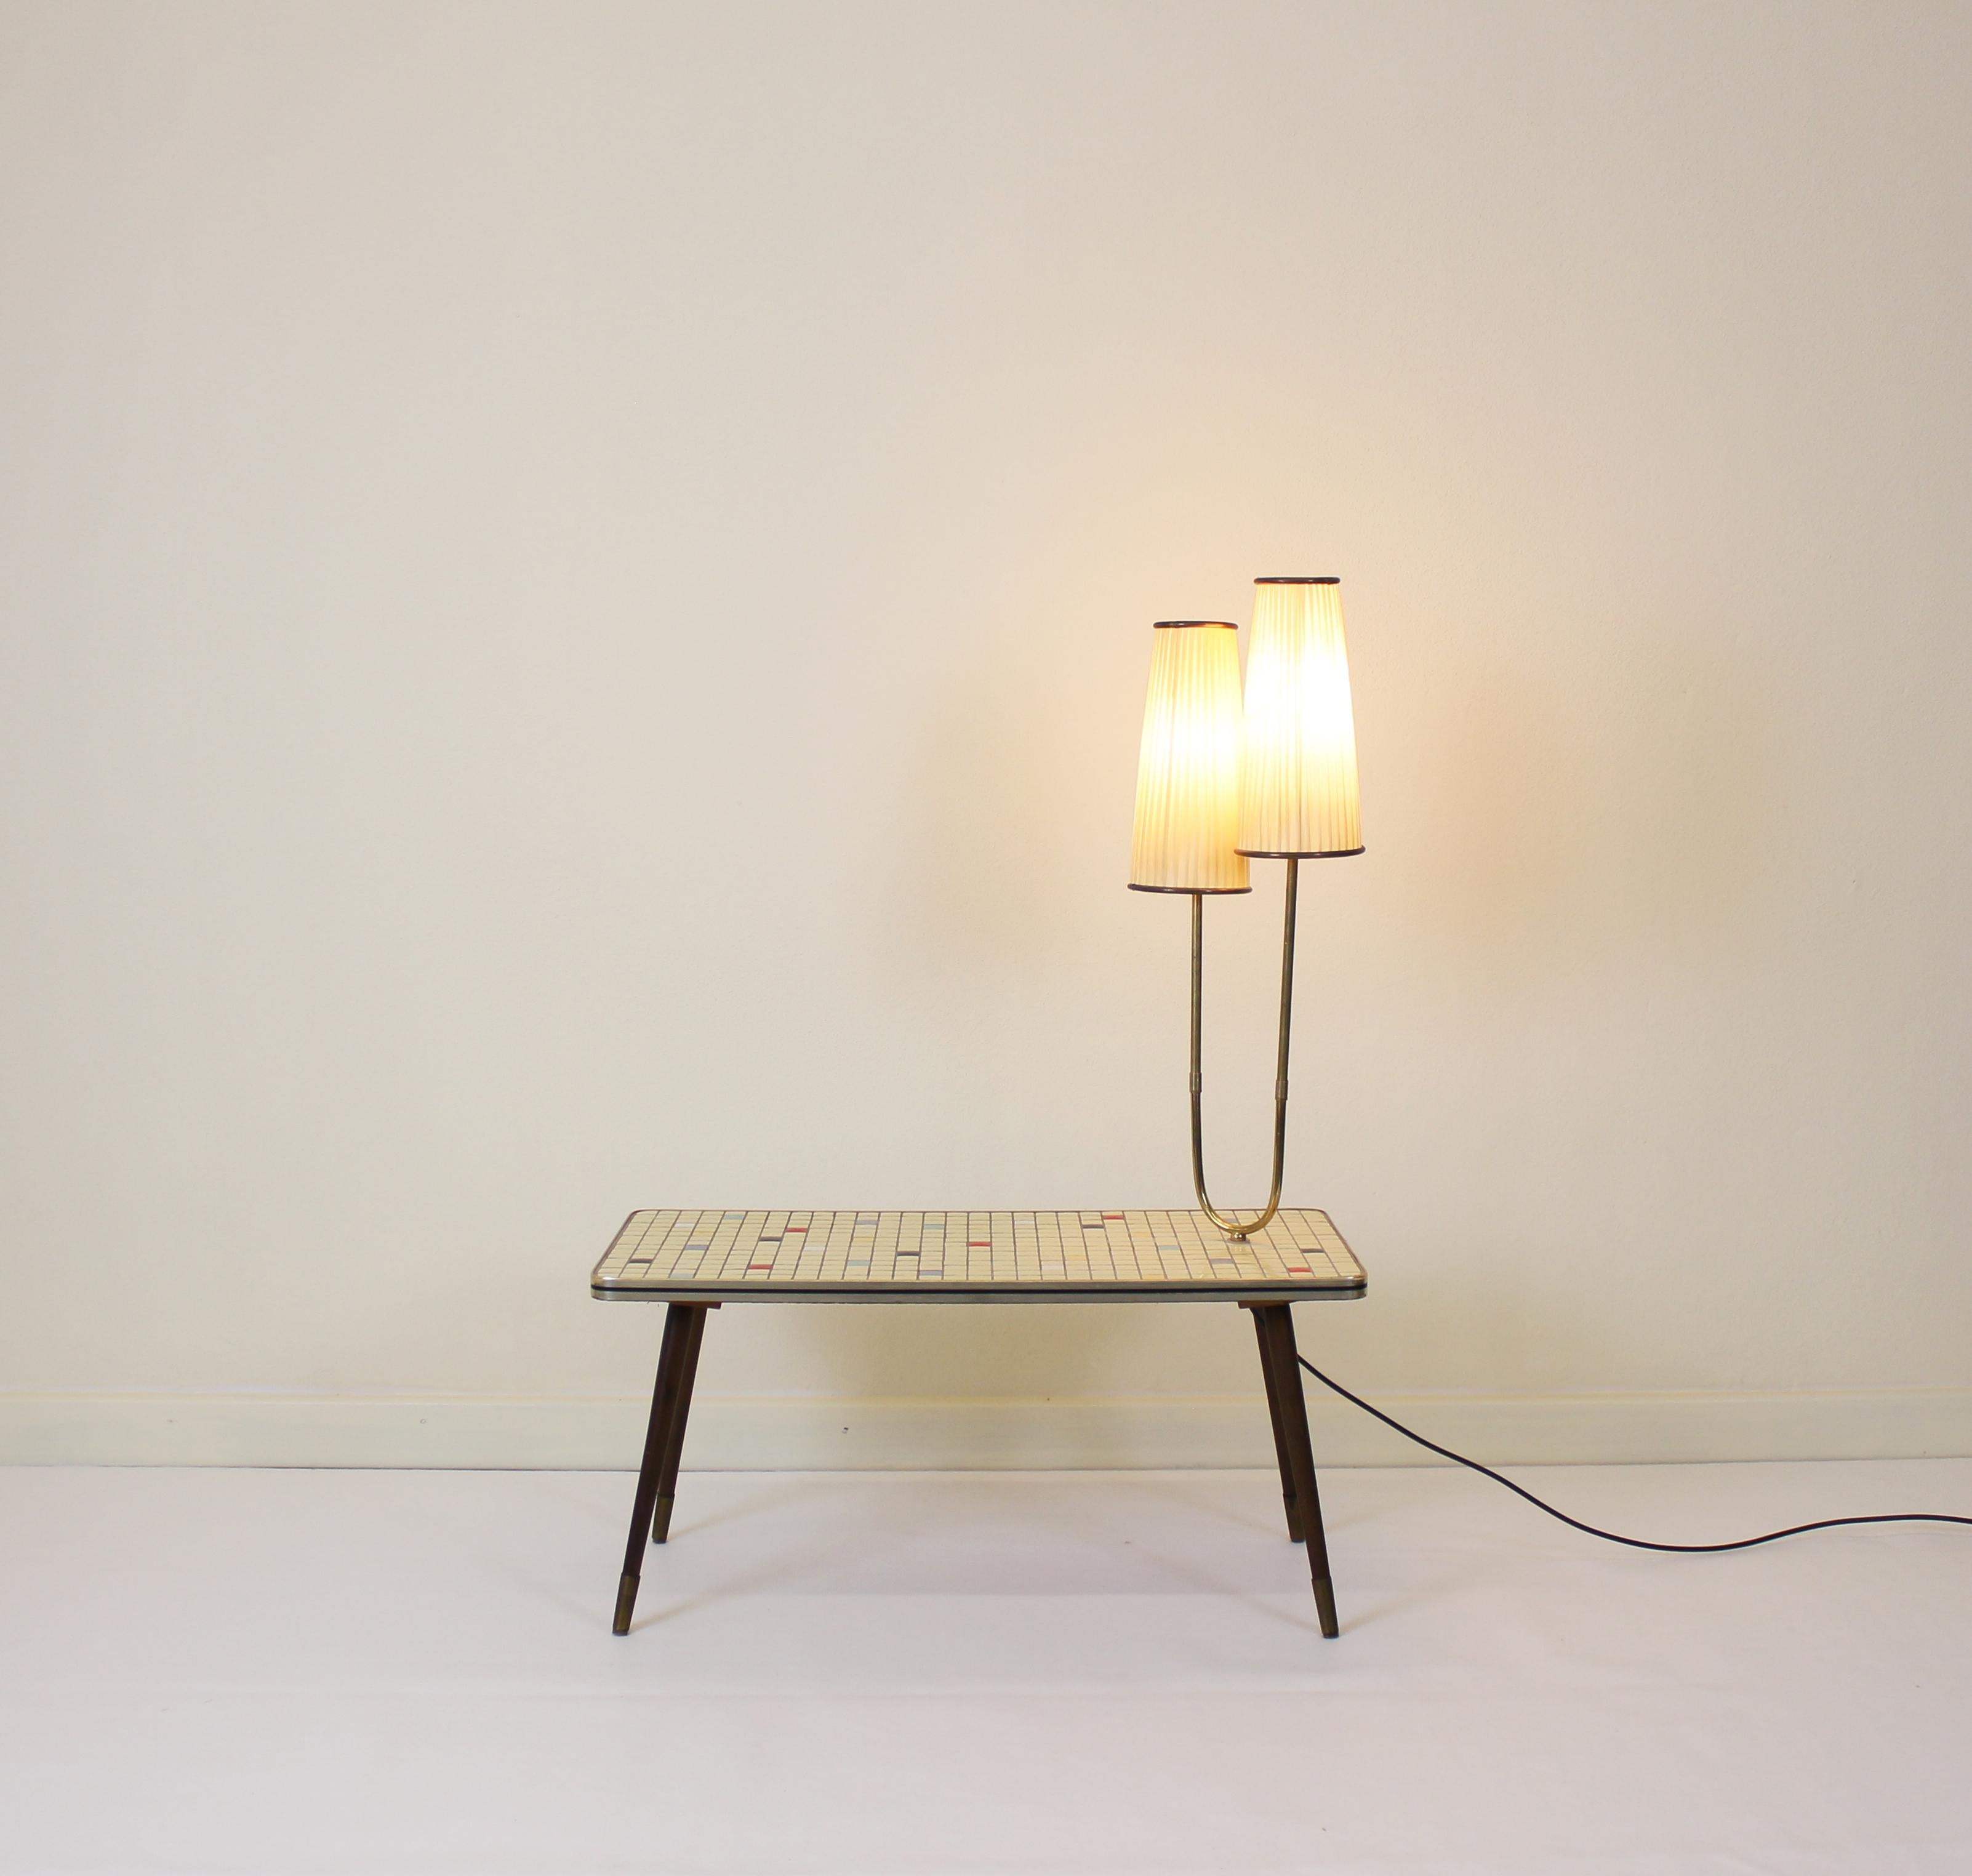 50er Jahre Stehlampe und Tisch.
Schöner gemütlicher Farbton
funktionell